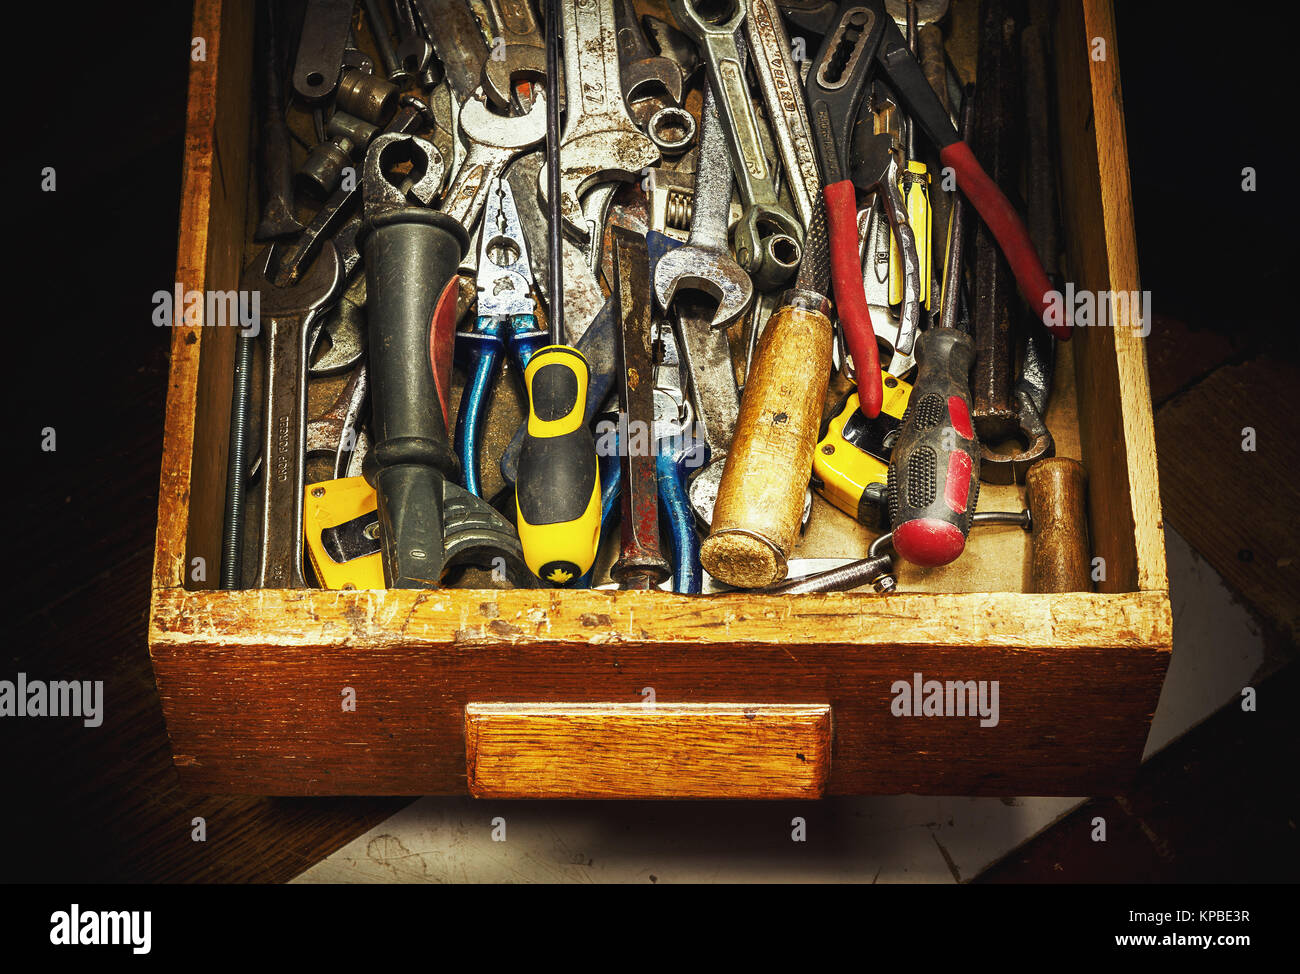 Detailansicht der Schublade voll mit alten verwendeten Werkzeuge  Stockfotografie - Alamy